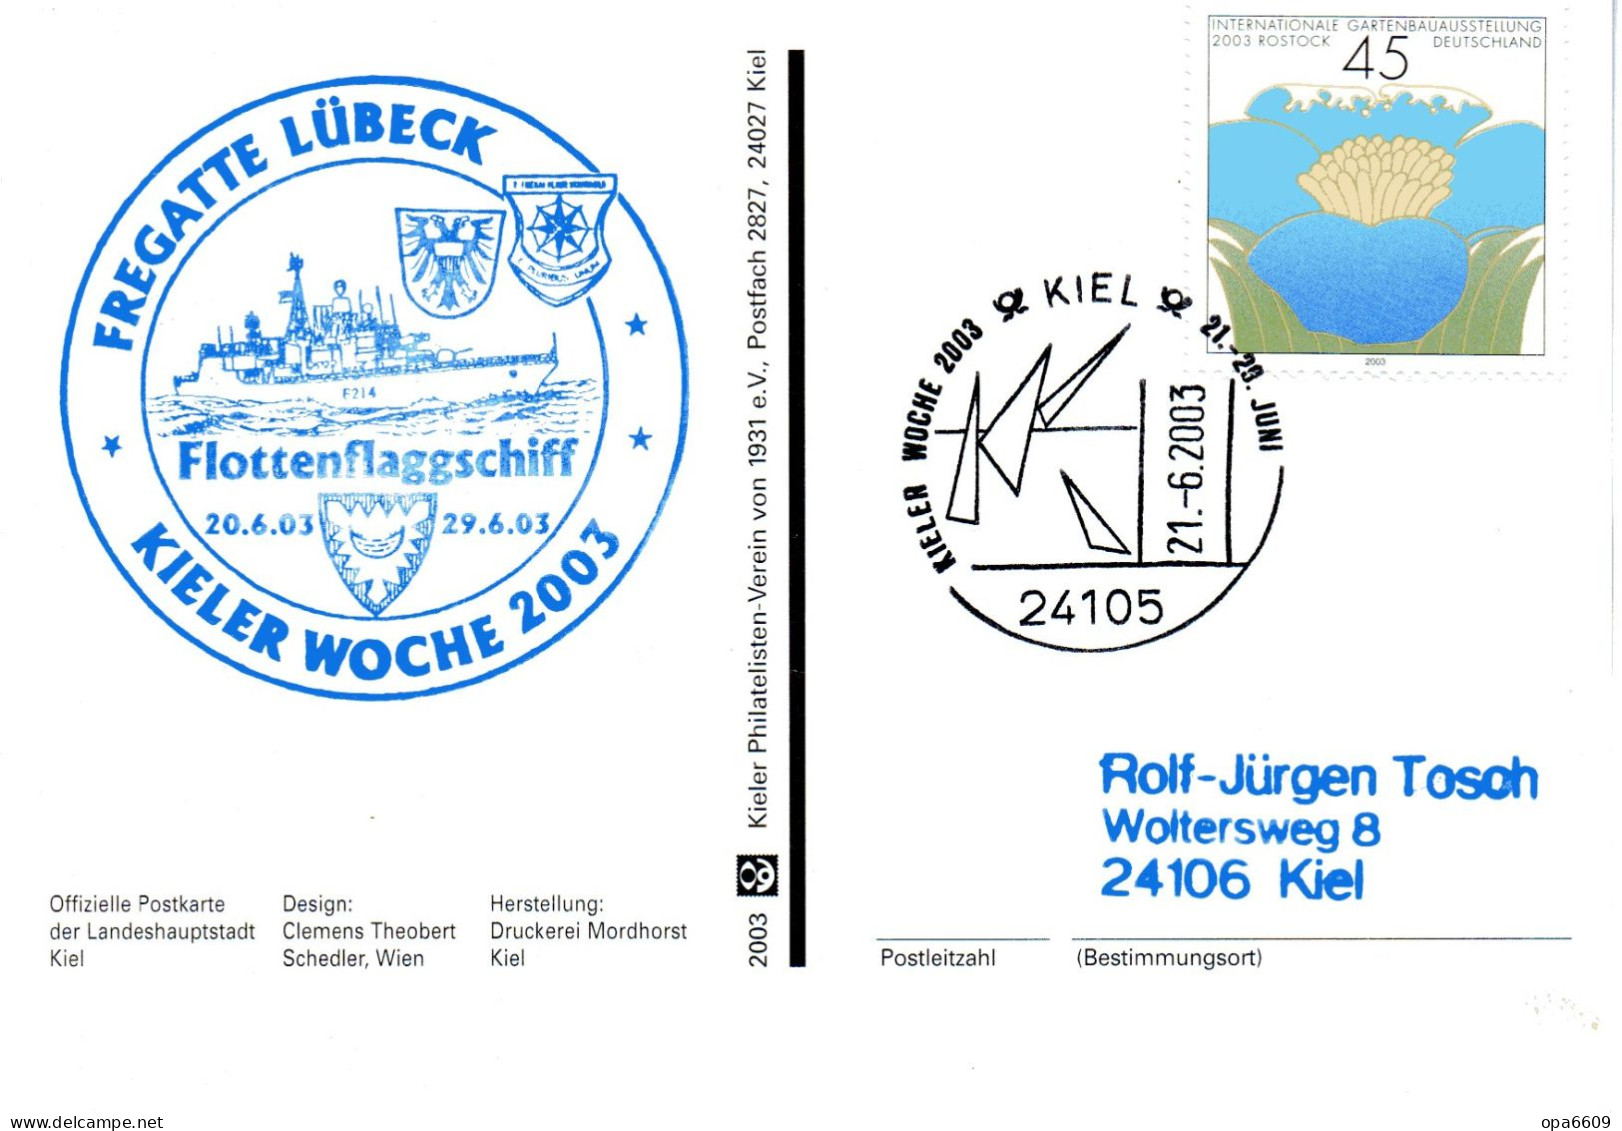 (Freg3)BRD Cachet-Sonderkarte KIELER WOCHE, FREGATTE "LÜBECK" F214 KIELER WOCHE 2003" EF BRD SSt 21.6.03 KIEL - Barche